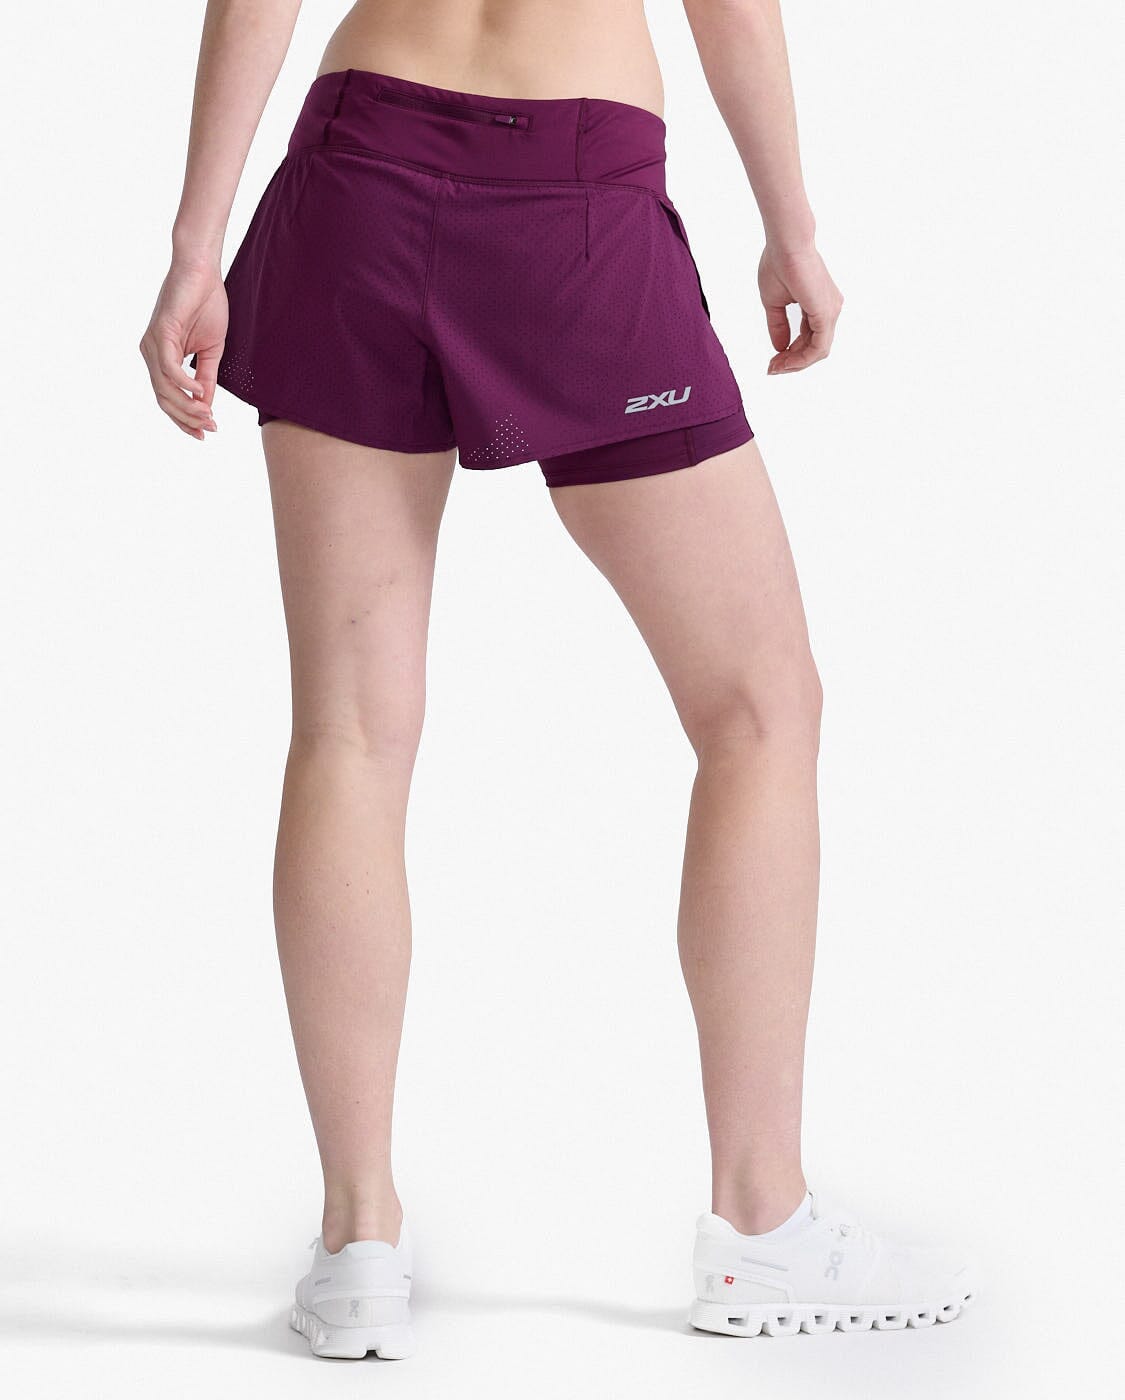 2XU Women's Aero 2-in-1 4" Inch Shorts WR6861B Beet/Silver Reflective XS 